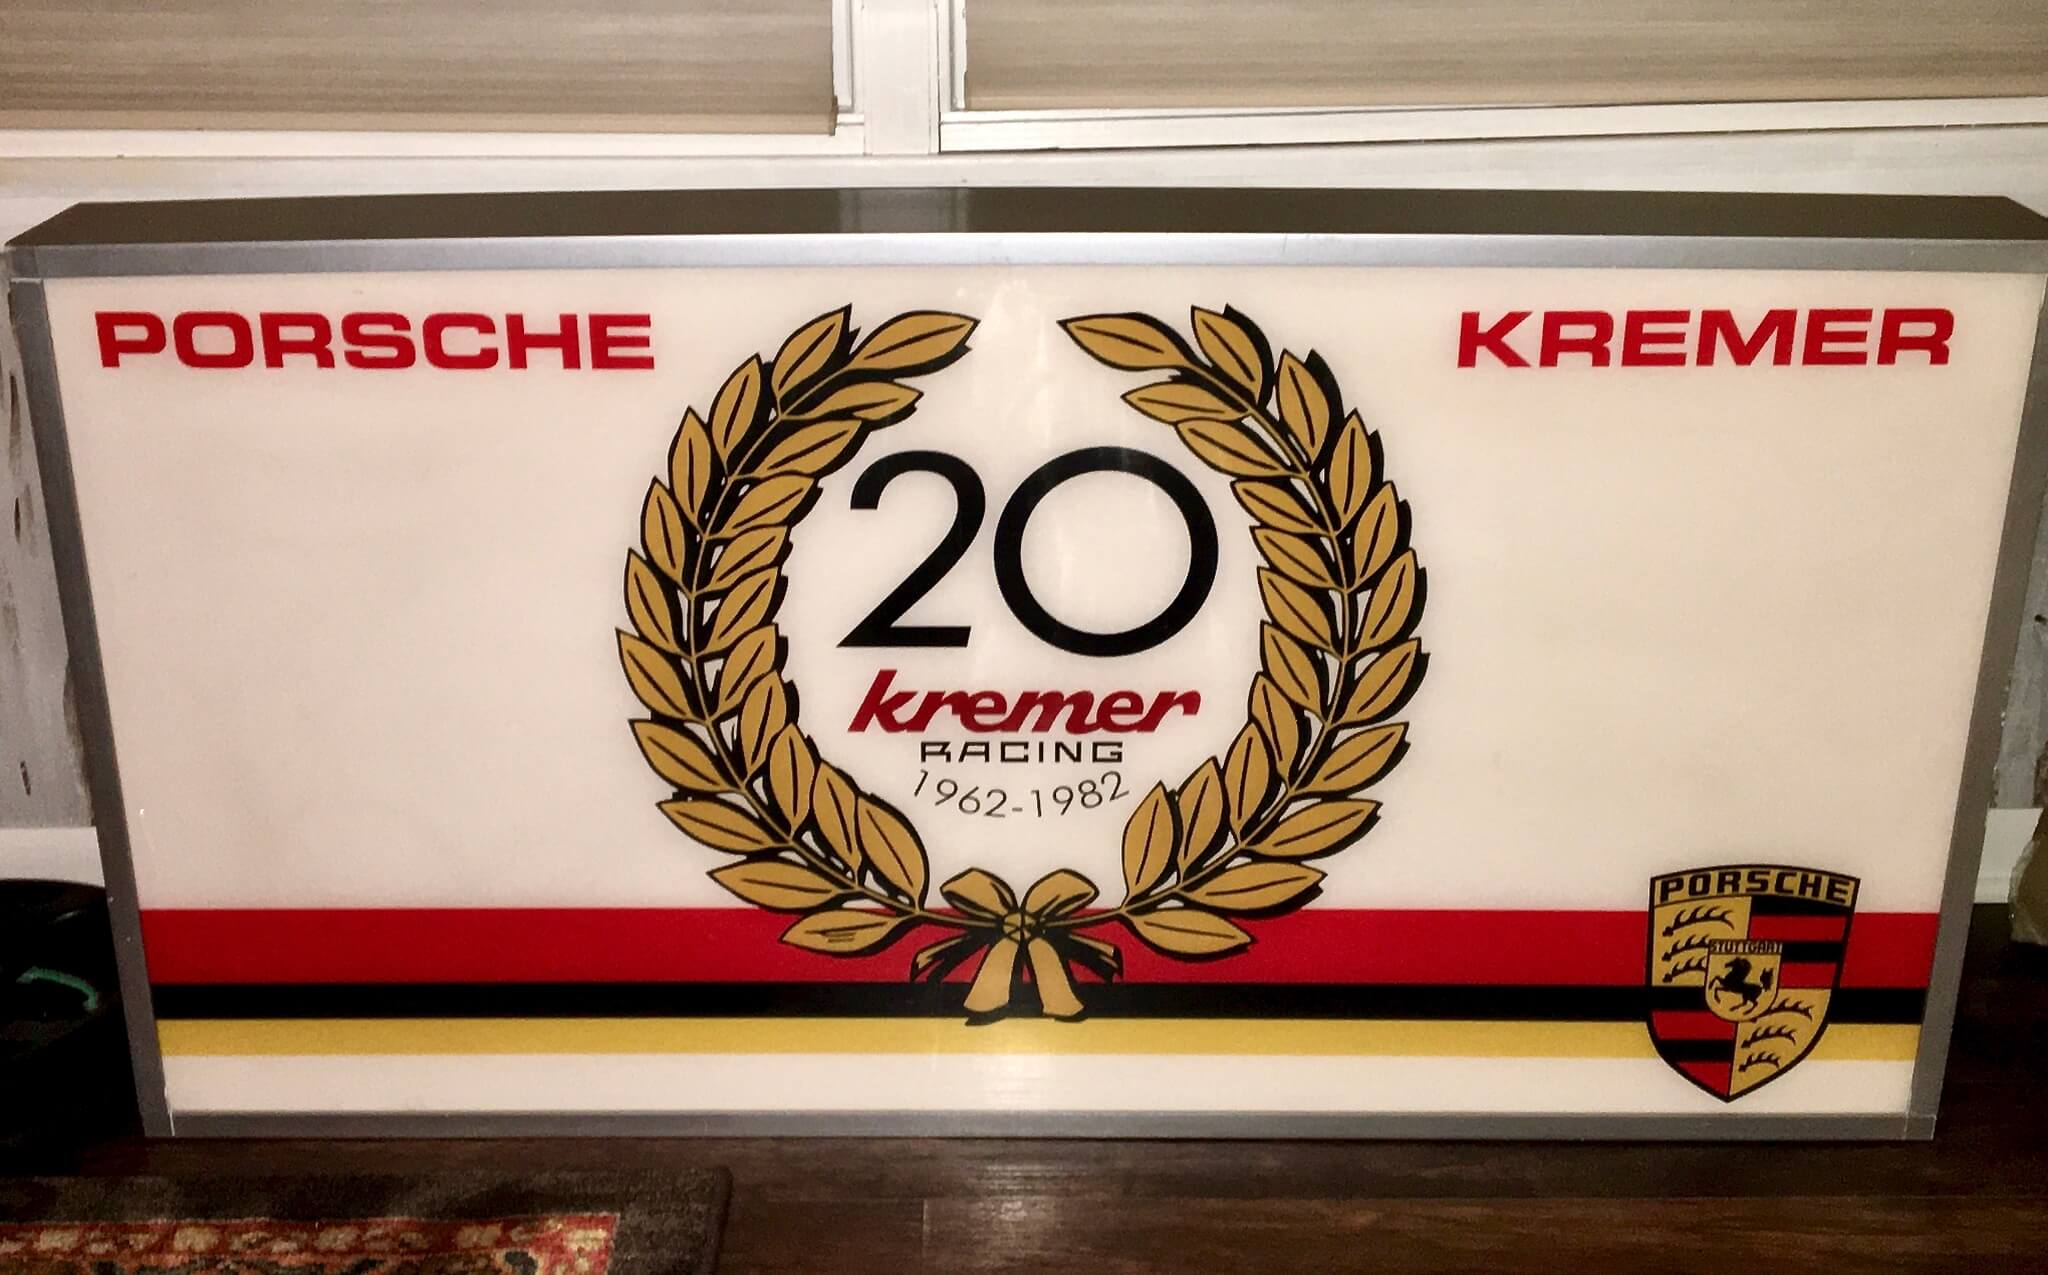  Kremer Racing 20th Anniversary Illuminated Sign (4' x 2')